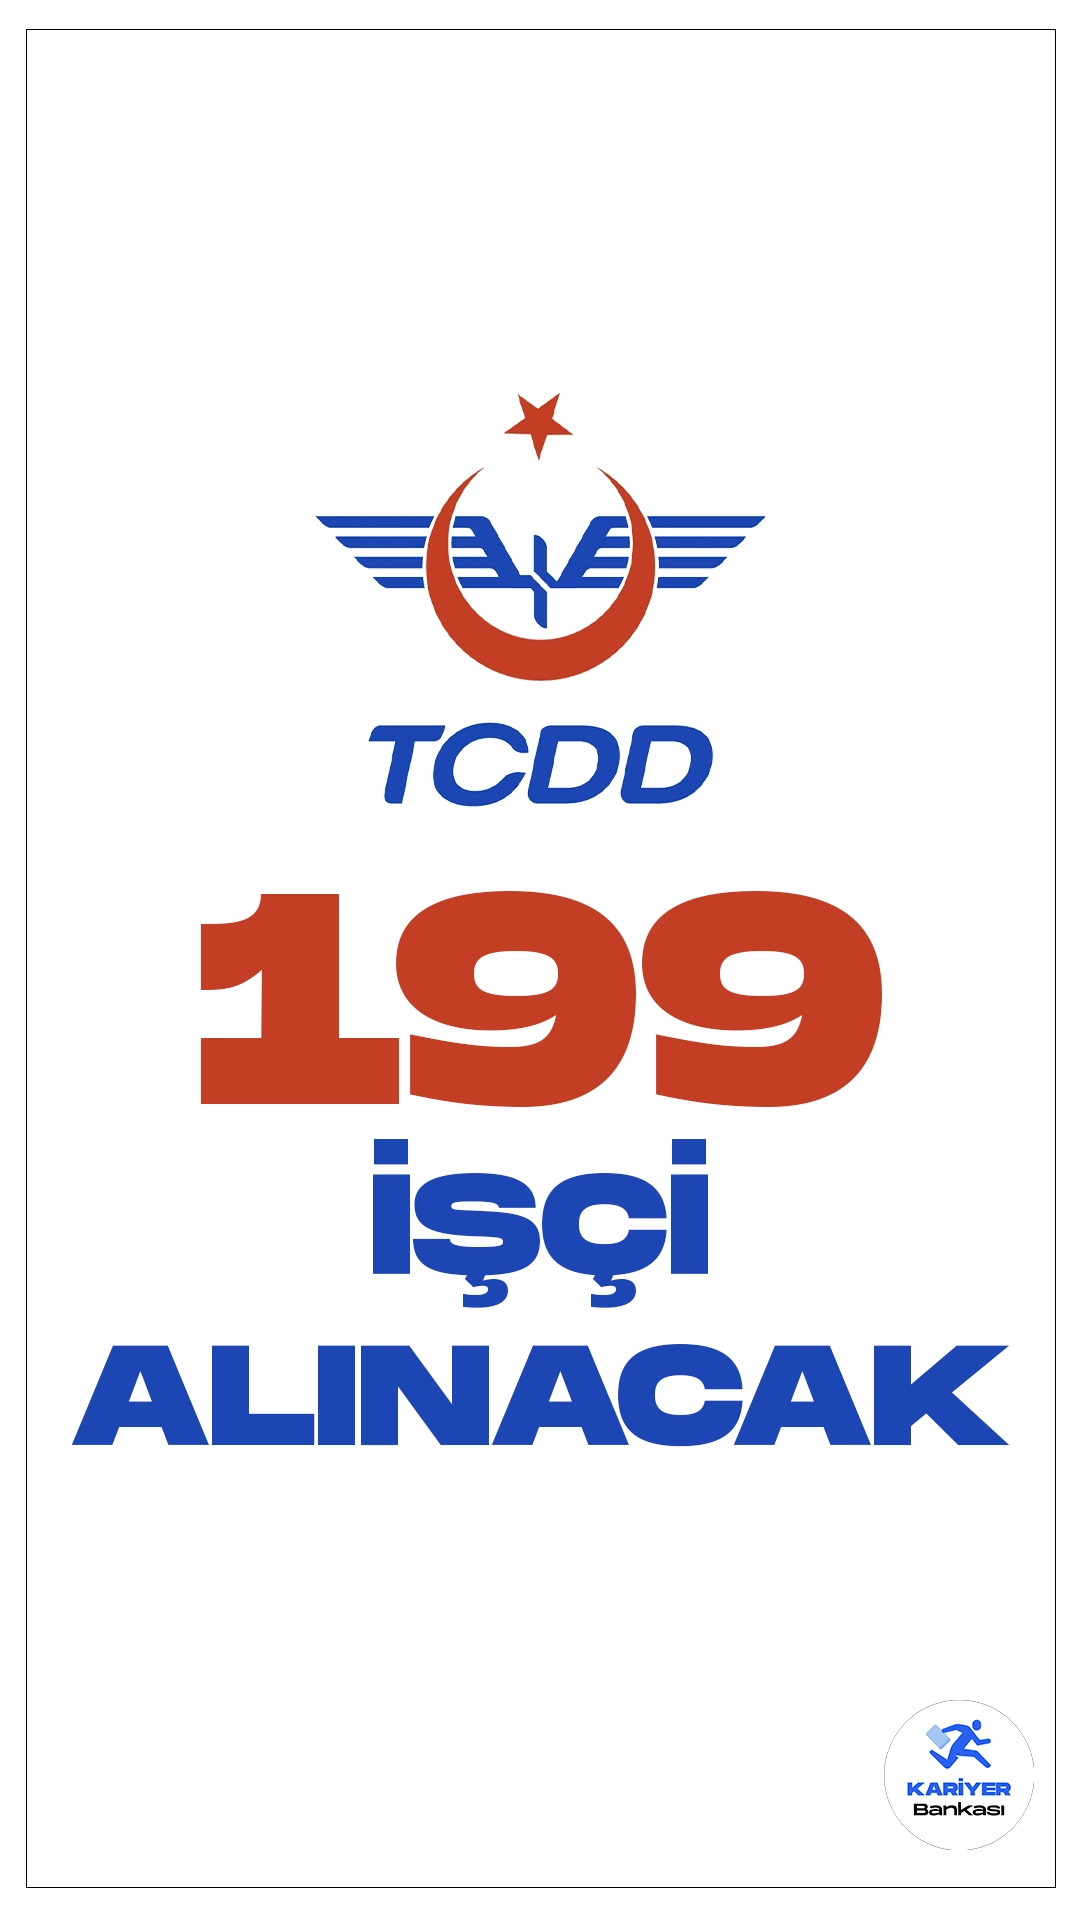 Türkiye Cumhuriyeti Devlet Demiryolları (TCDD) işçi alımı duyurusu yayımlandı. Cumhurbaşkanlığı Strateji ve Bütçe Başkanlığı Kamu ilan sayfasında yayımlanan duyuruya göre, TCDD'ye sürekli işçi alımı yapılacak. Başvurular bugün(18 Aralık) itibarıyla alınacak. Başvuru yapacak adayların belirtilen şartları sağlaması gerekmektedir.